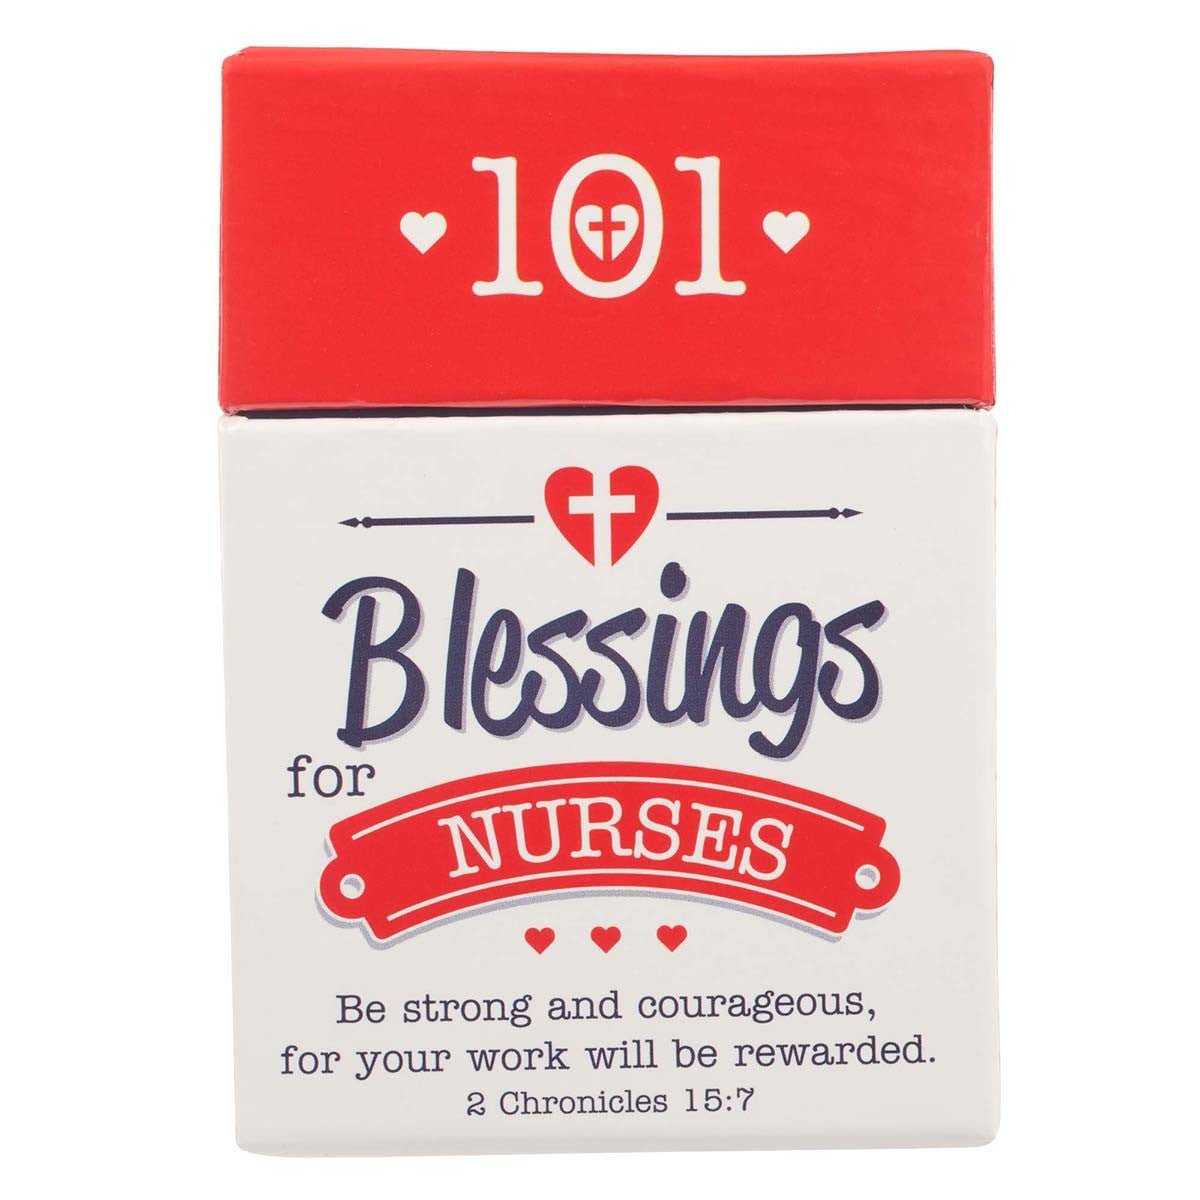 101 Blessings for Nurses Box of Blessings - 2 Chronicles 15:7 | 2FruitBearers